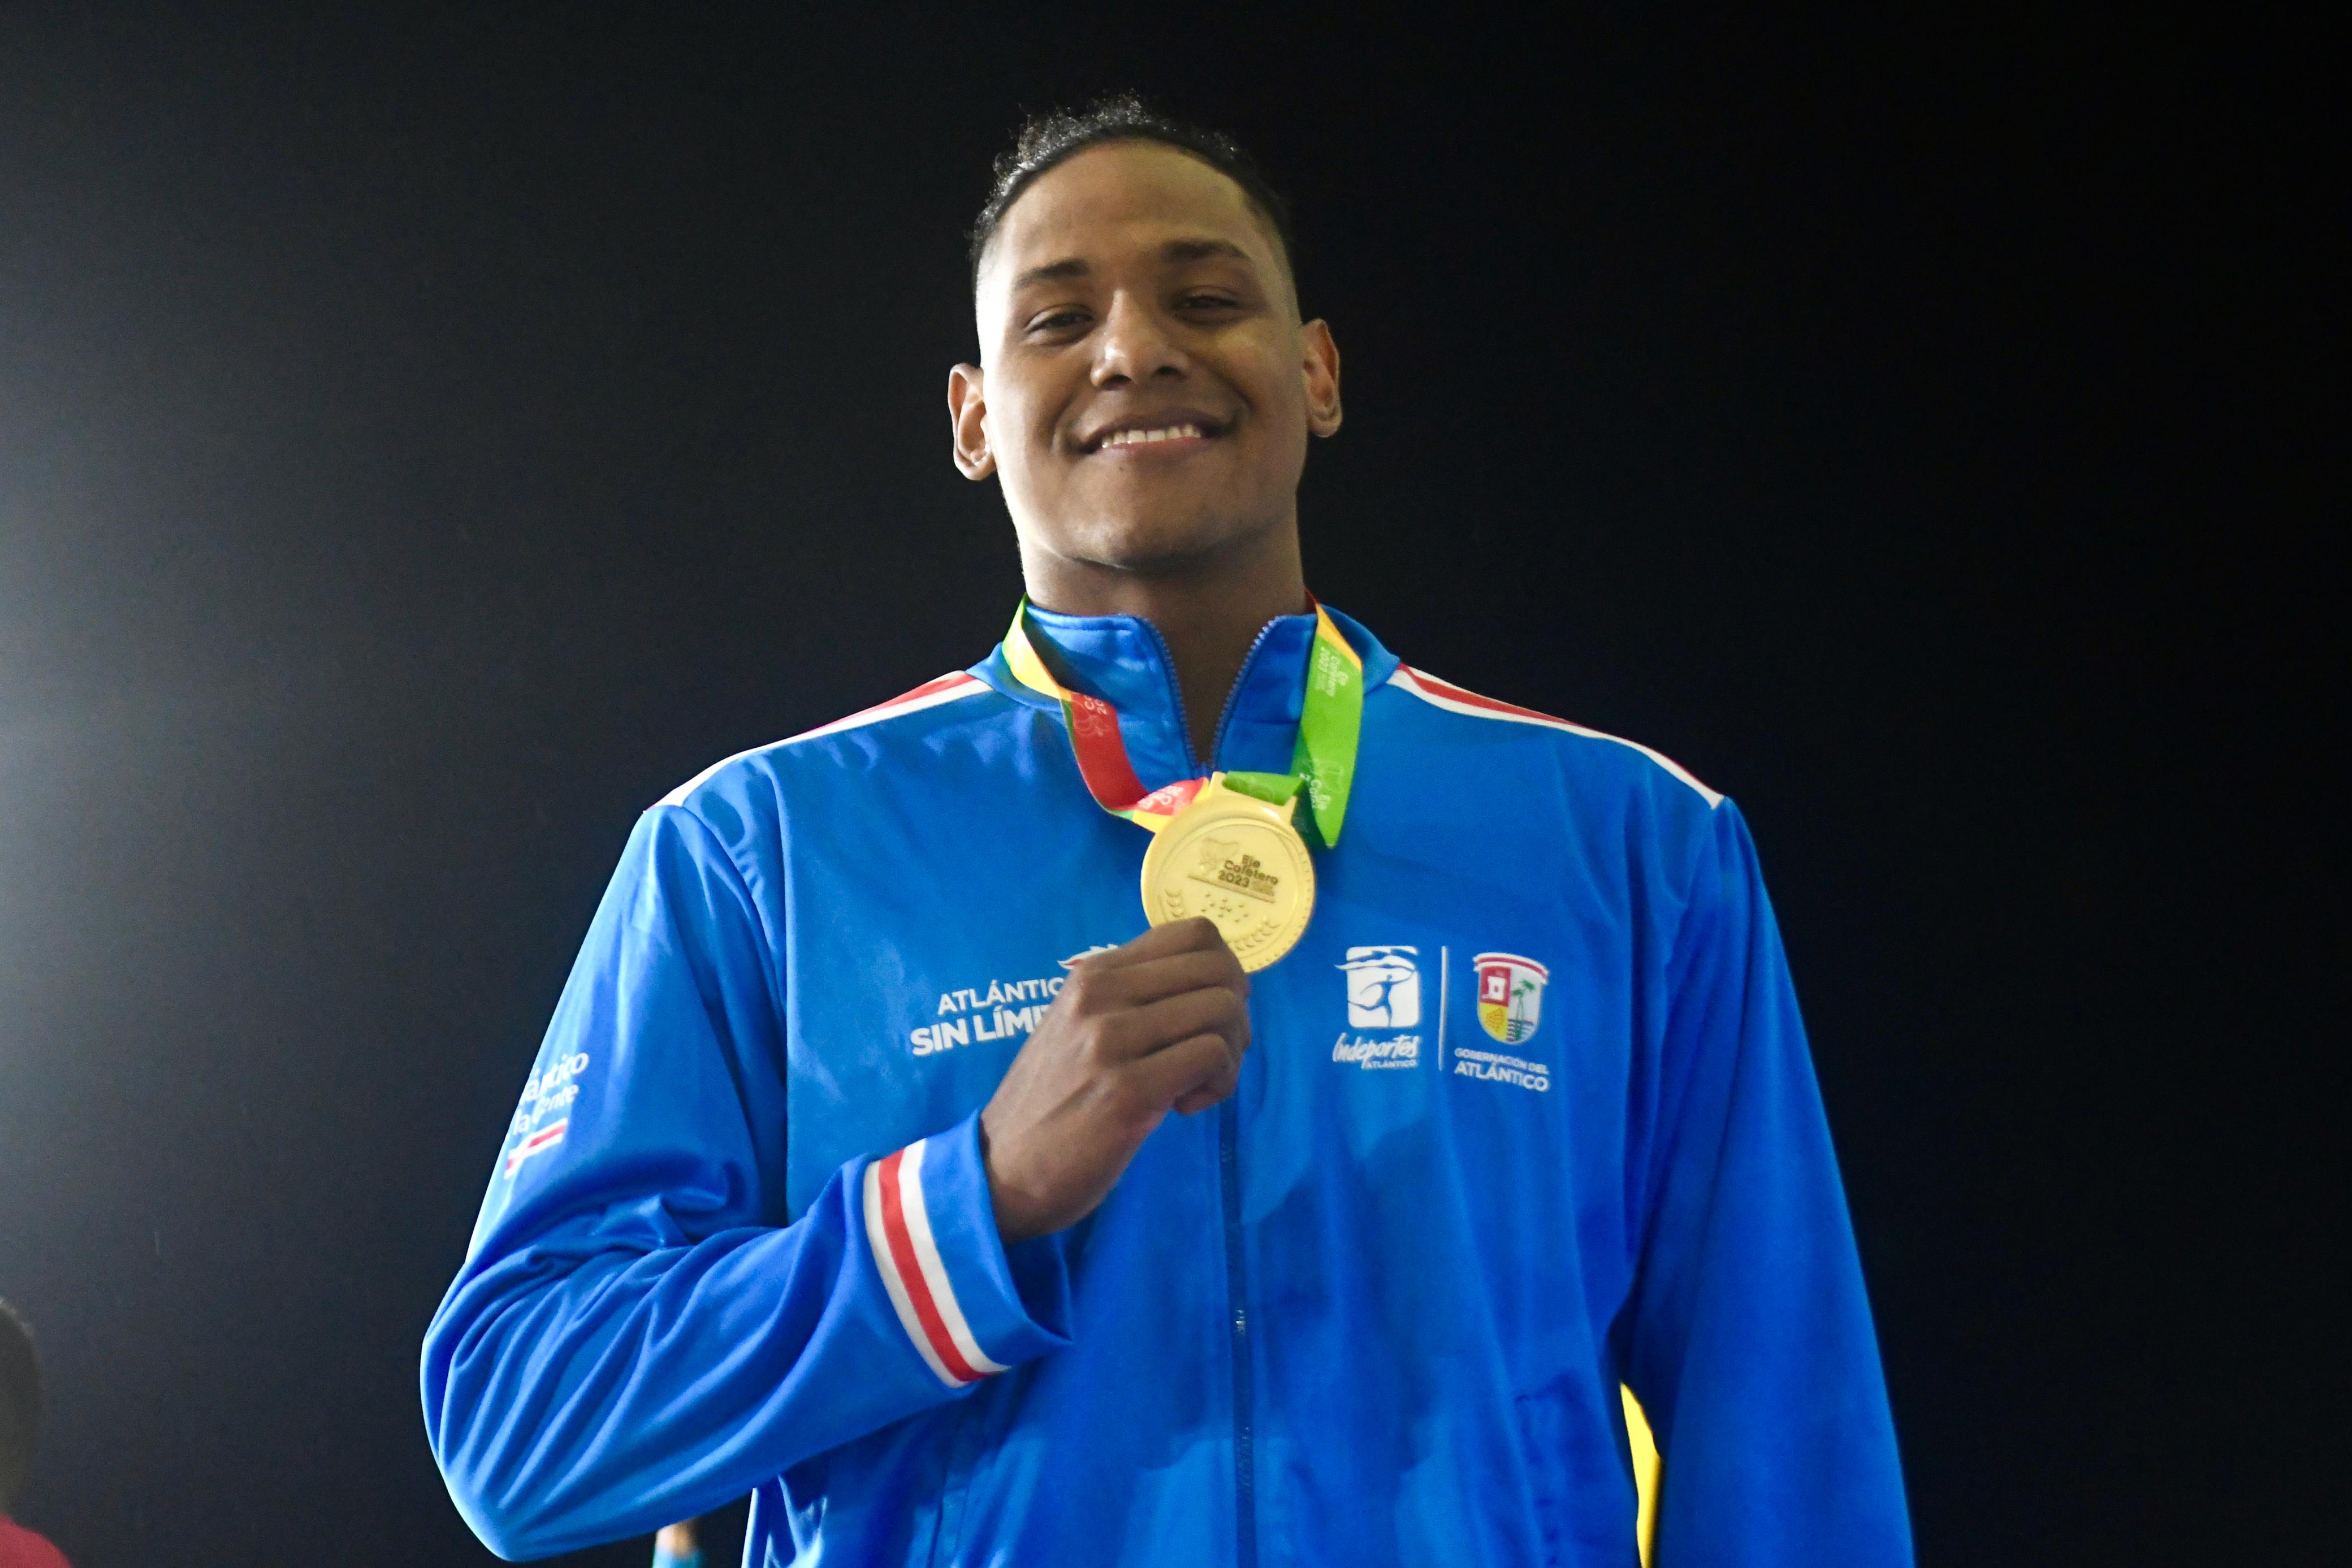 El nadador Camilo Marrugo, oro en 50 metros libres 